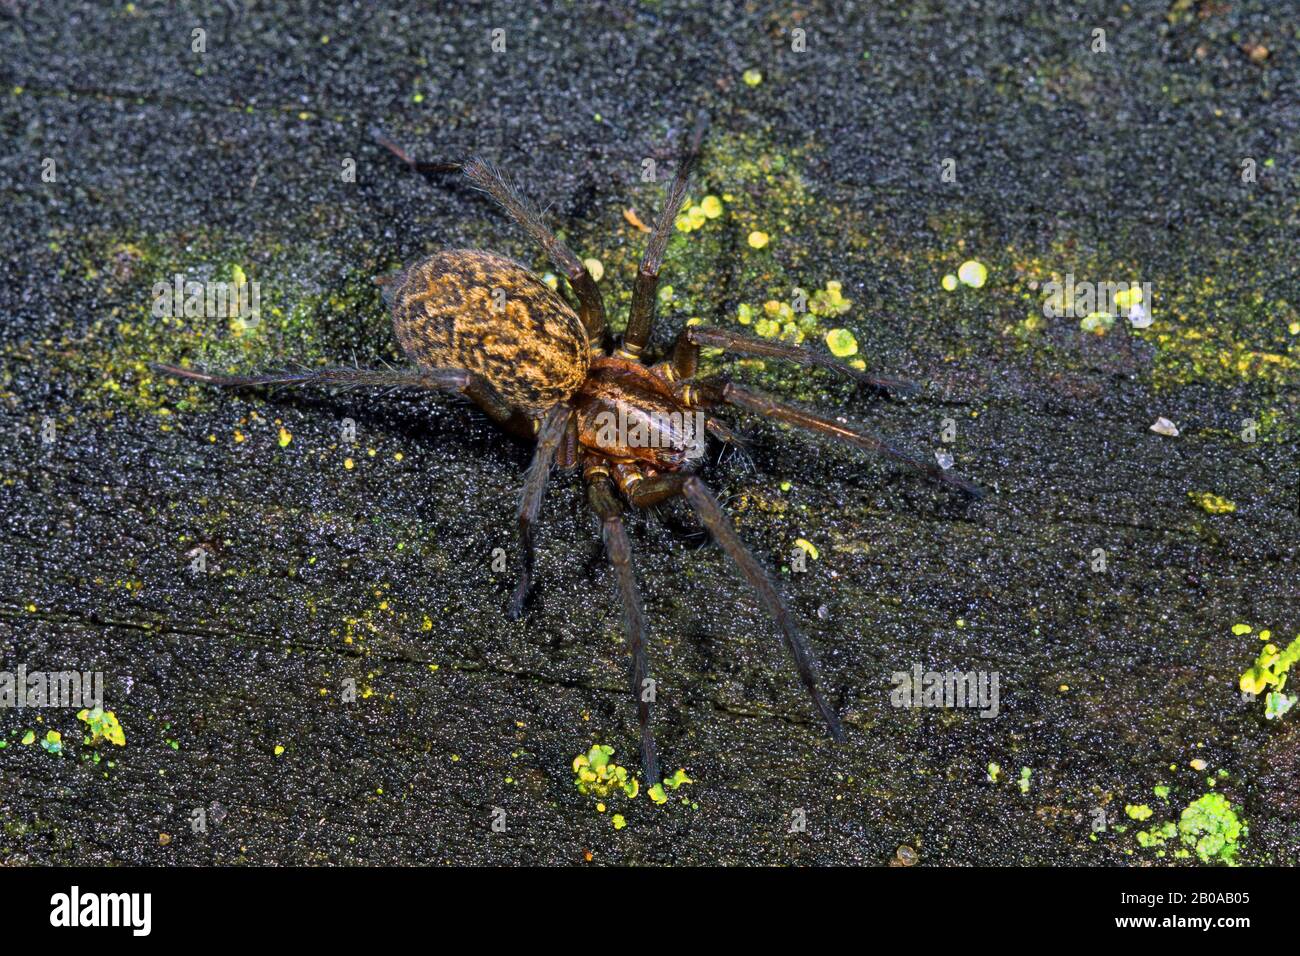 L'araignée de Hobo, l'araignée de cour (Tegenaria agrestis, Estatigena agrestis), se trouve sur une pierre, en Allemagne Banque D'Images